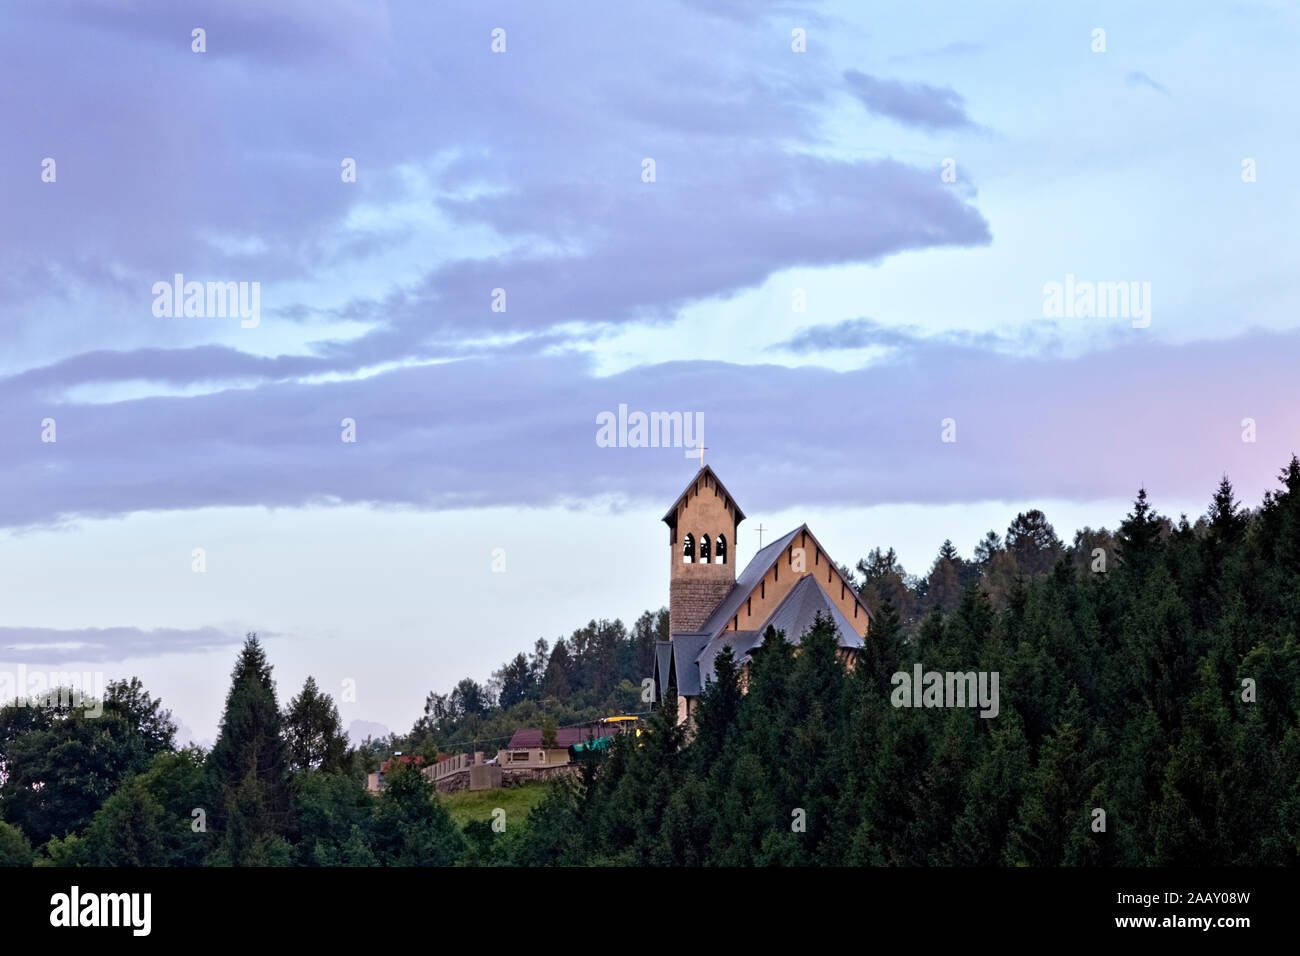 Die Stoccaredo Kirche. Der berühmte Roman "Un anno sull'altipiano" von Emilio Lussu spielt in diesem Bereich. Asiago Plateau, Italien. Stockfoto